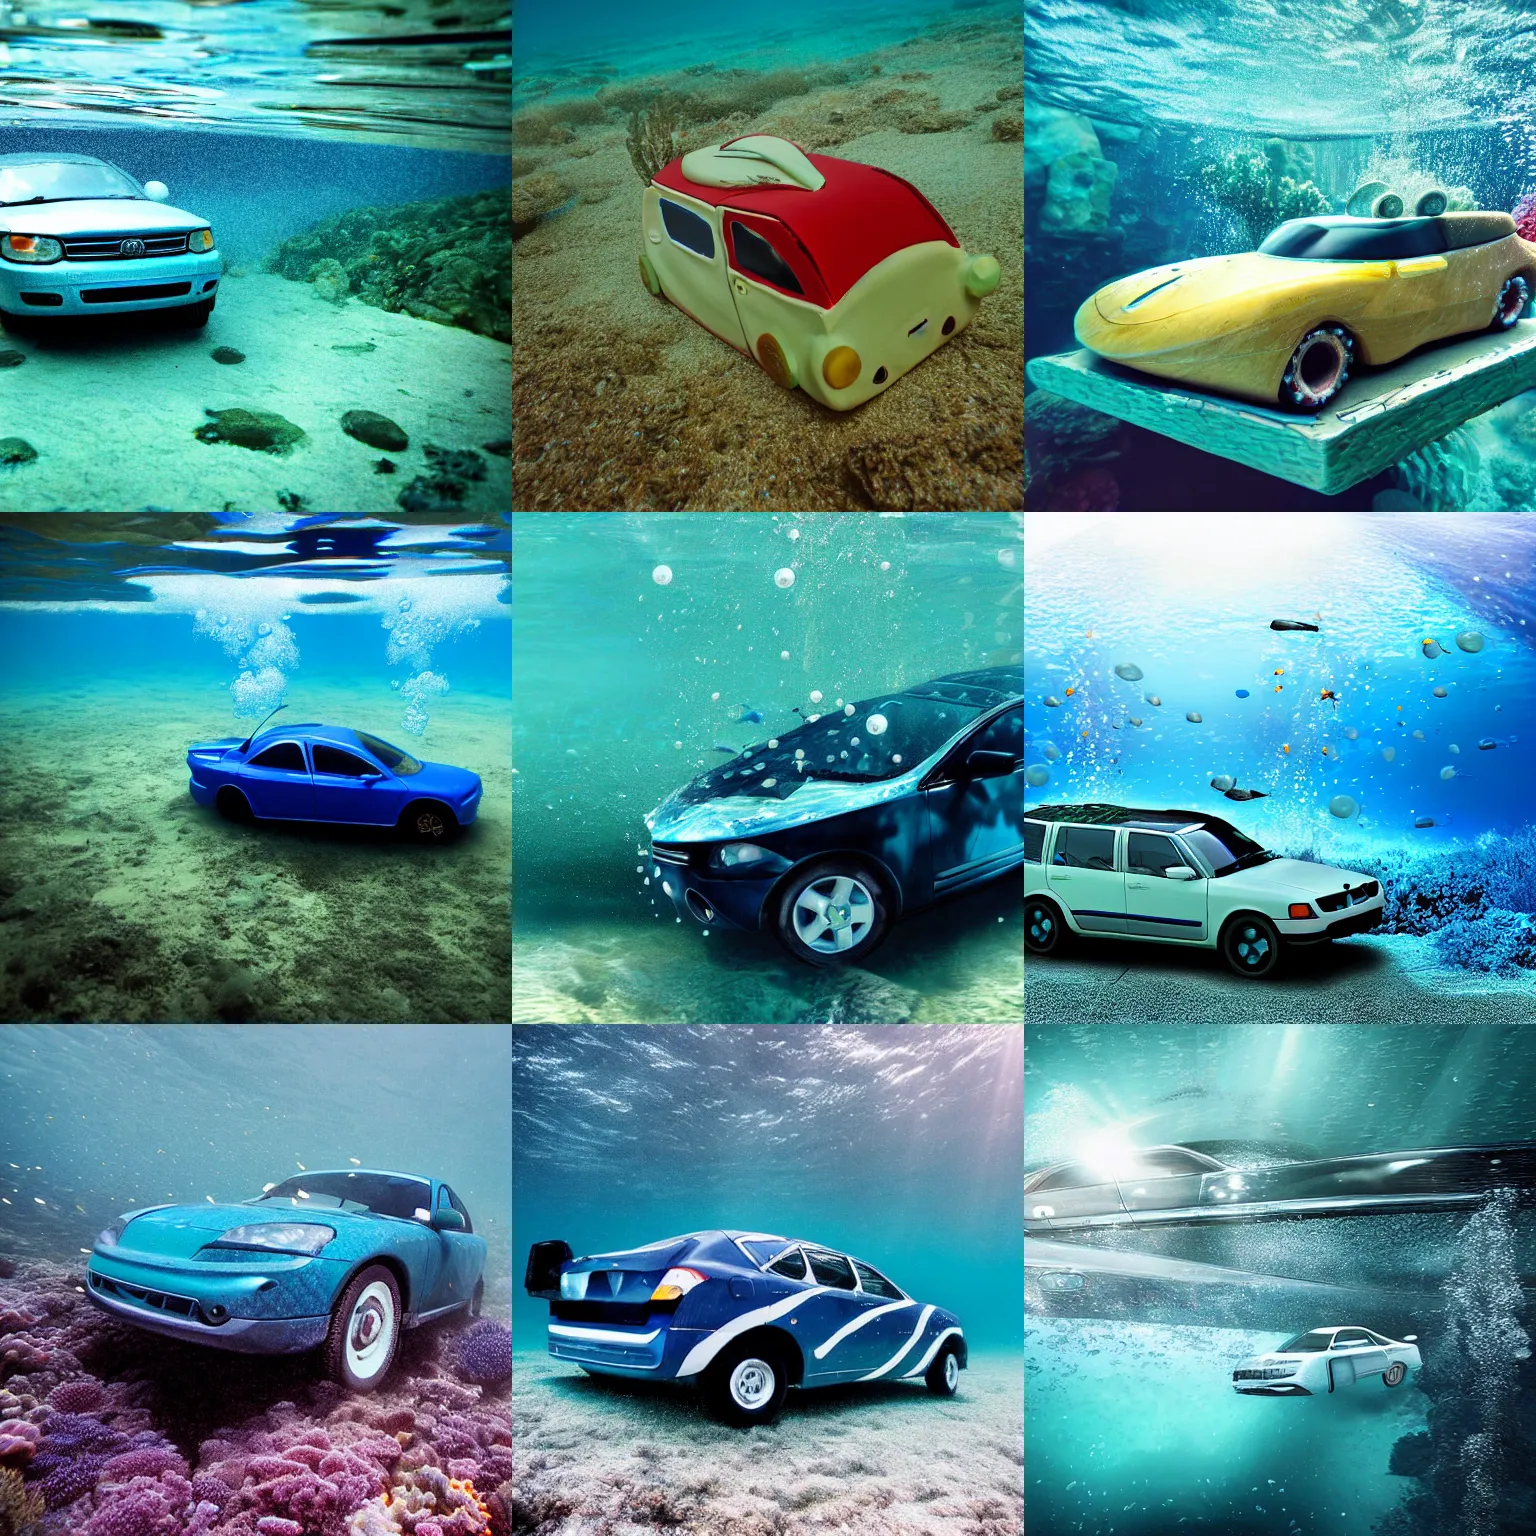 Prompt: underwater car